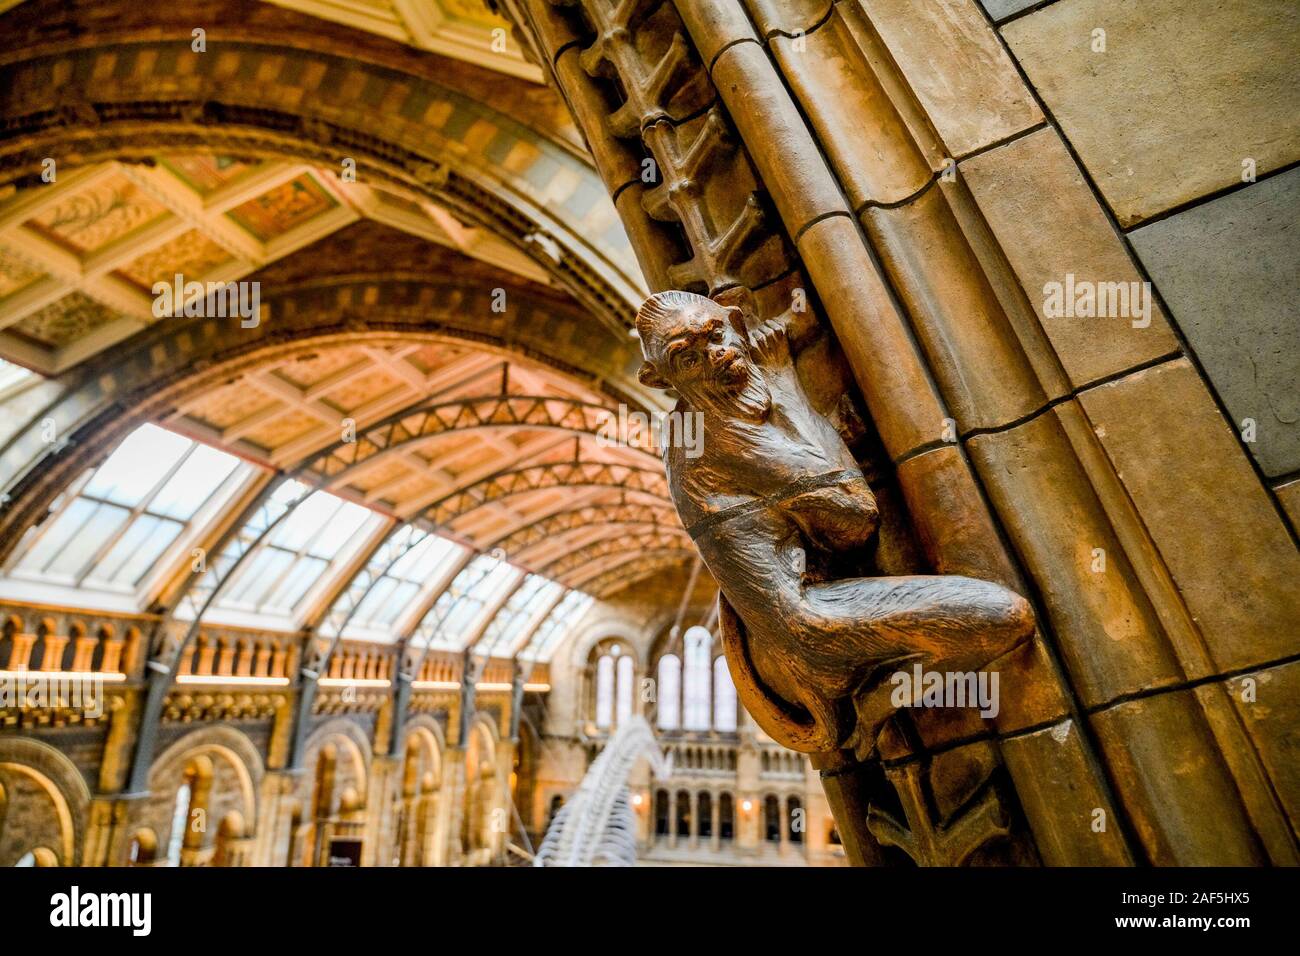 La scalata di scimmia dettagli scolpiti, Museo di Storia Naturale di Londra, Inghilterra, Regno Unito Foto Stock